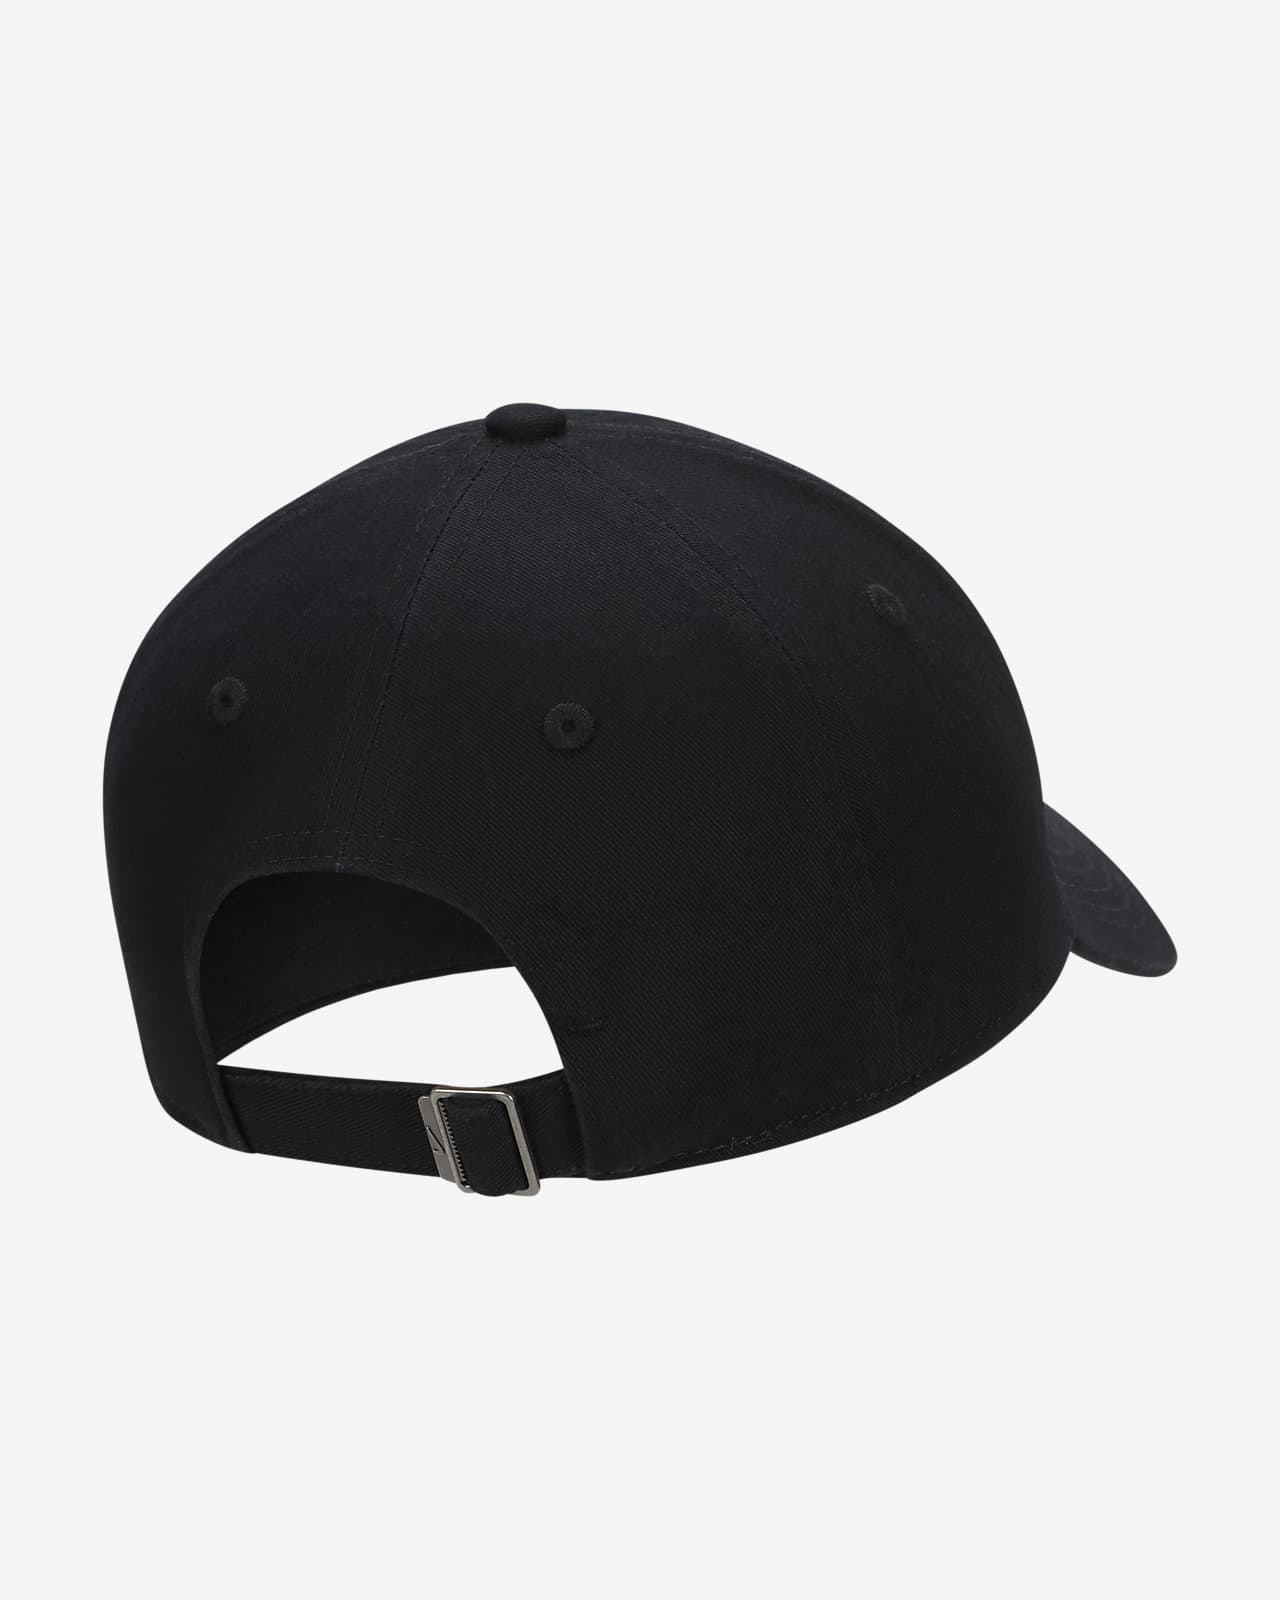 Nike Unisex Futura Lifestyle Club Performance Adjustable Hat - Black